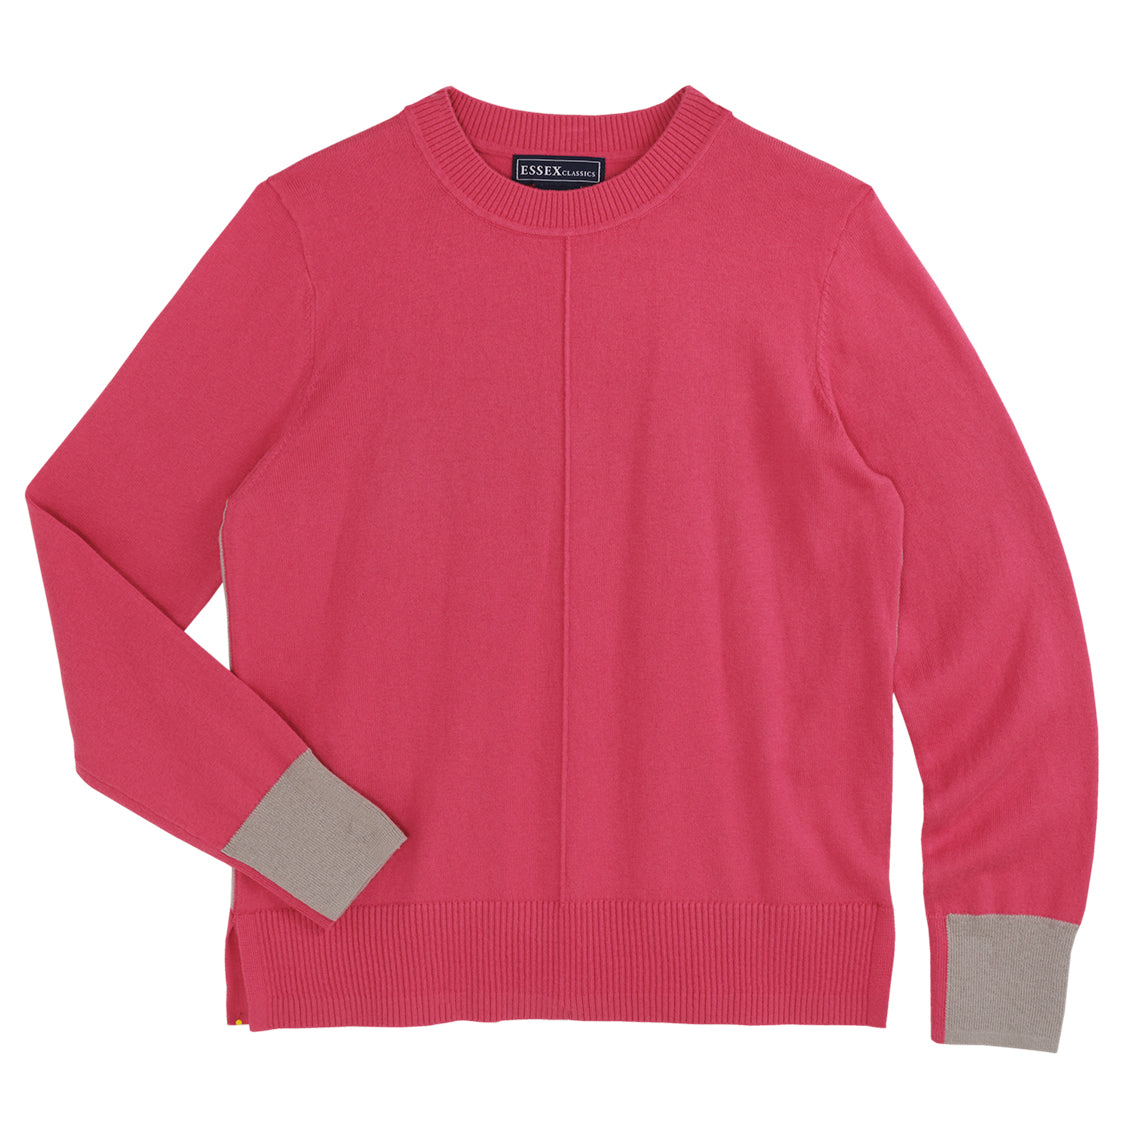 Essex Luca Crewneck Sweater